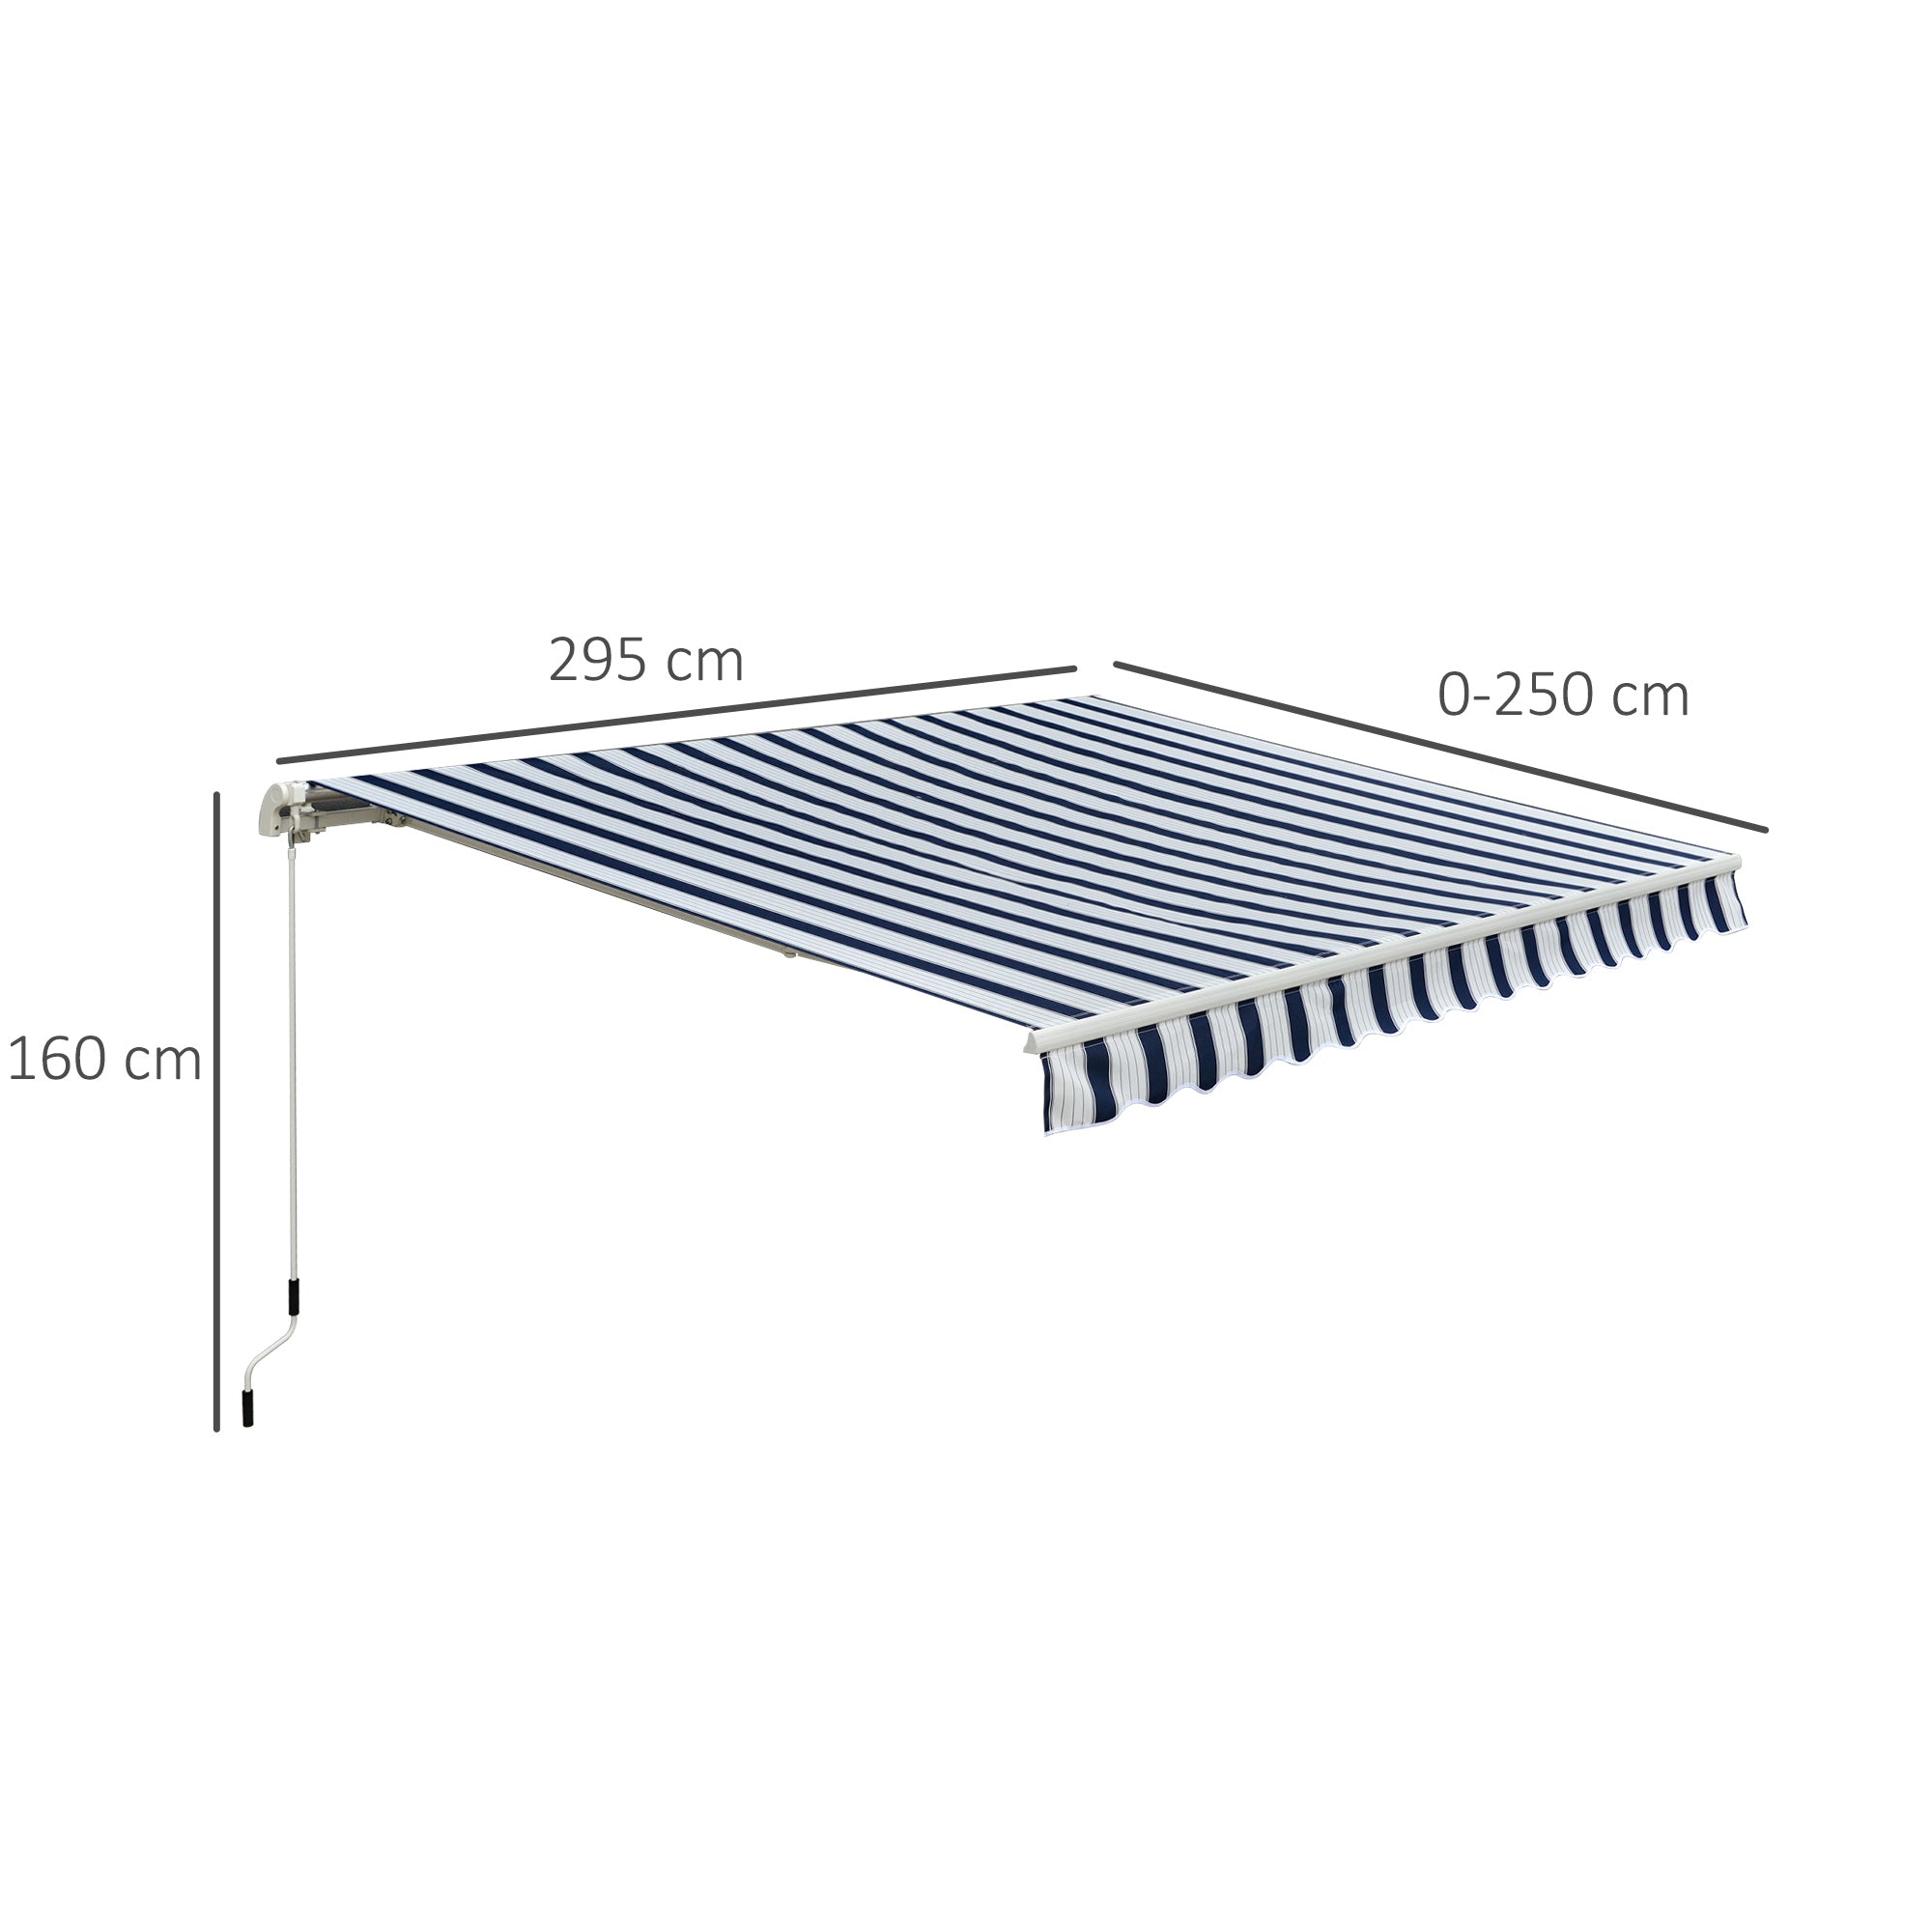 EASYCOMFORT Tenda da Sole a Bracci per Esterno con Manovella, Metallo e  Poliestere, 3x2.5m Blu e Bianco